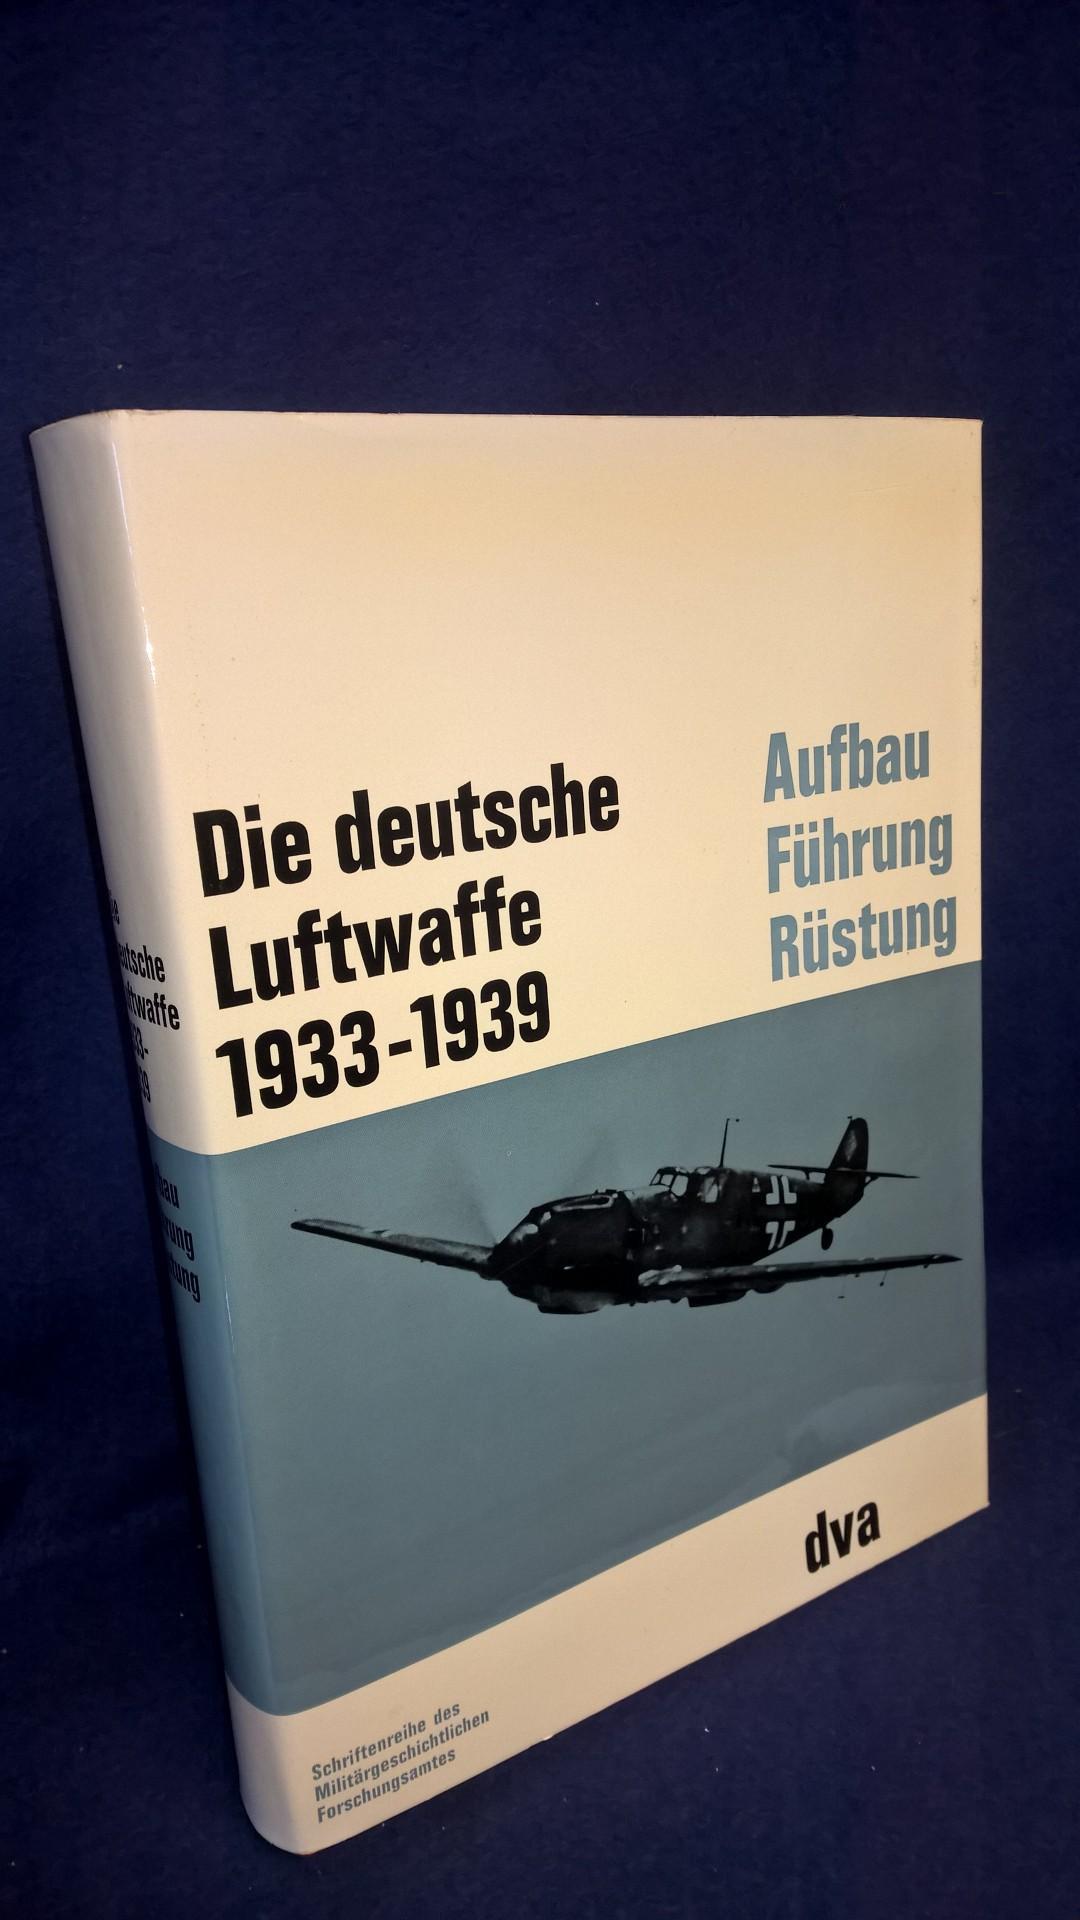 Beiträge zur Militär- und Kriegsgeschichte, Band 8: Die Deutsche Luftwaffe 1933-1939. Aufbau,Führung und Rüstung der Luftwaffe sowie die Entwicklung der deutschen Luftkriegstheorie.